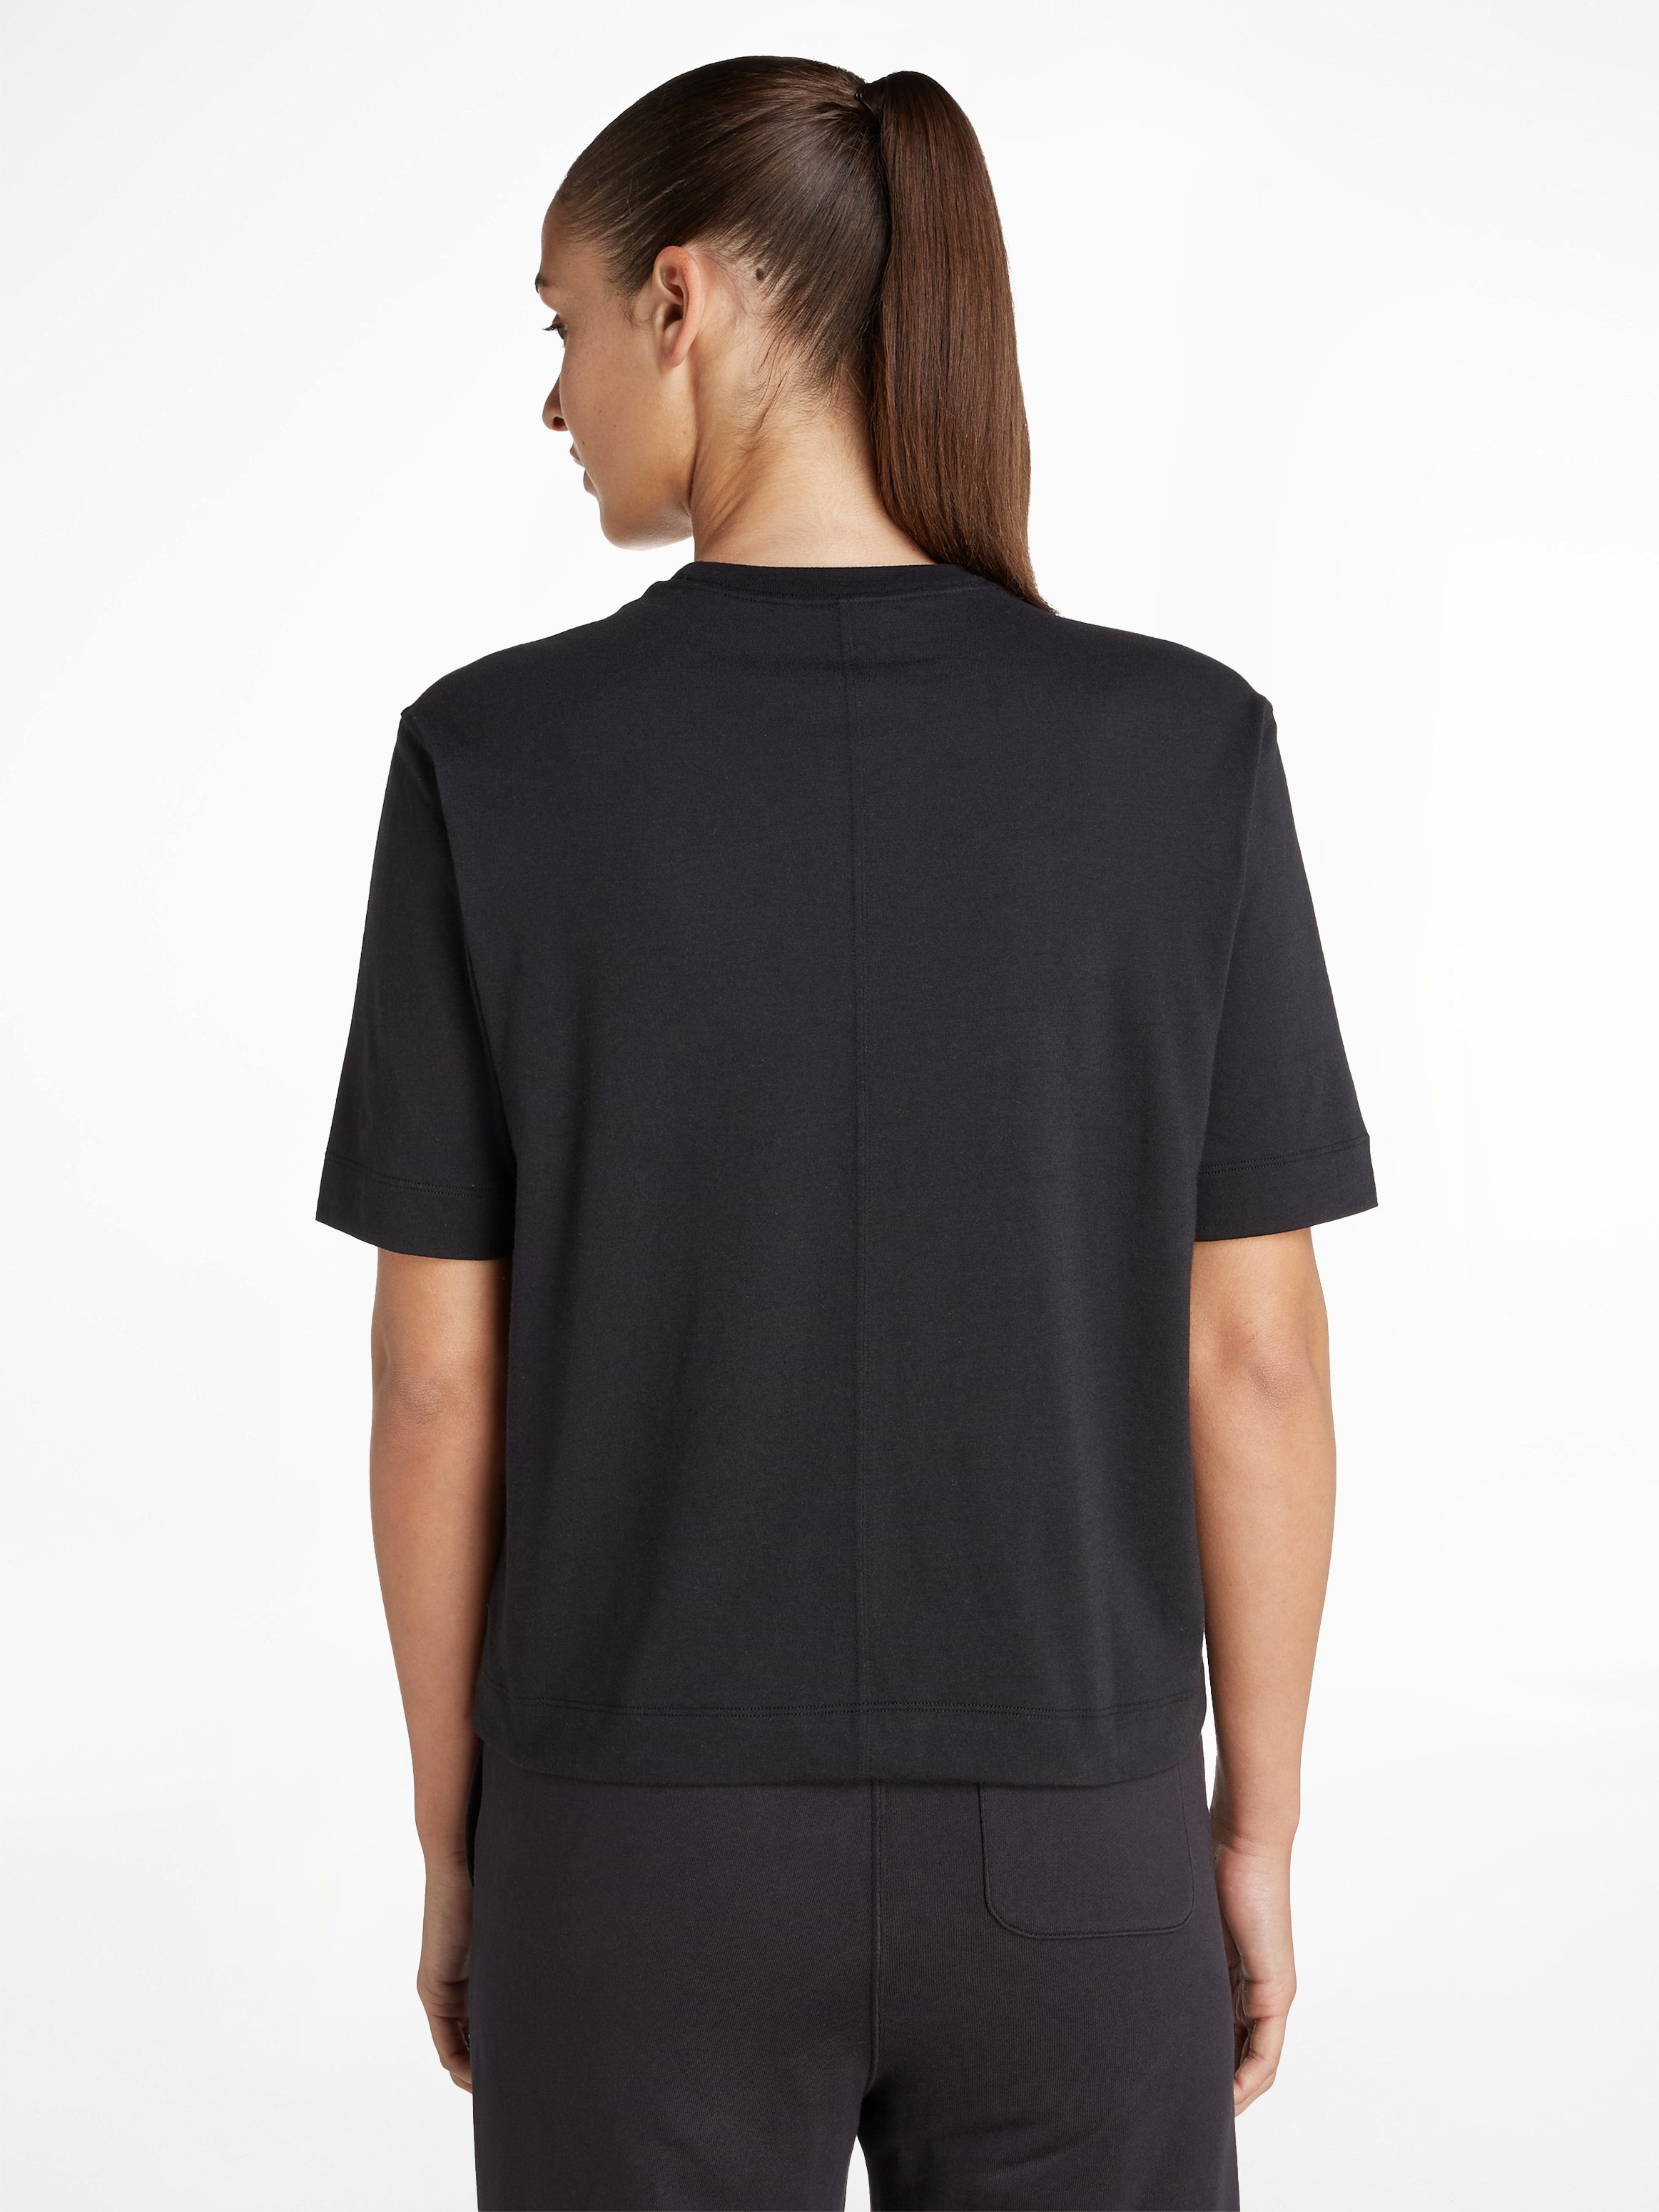 Calvin Klein Sport T-Shirt, Lockerer Schnitt mit überschnittenen Schultern | T-Shirts